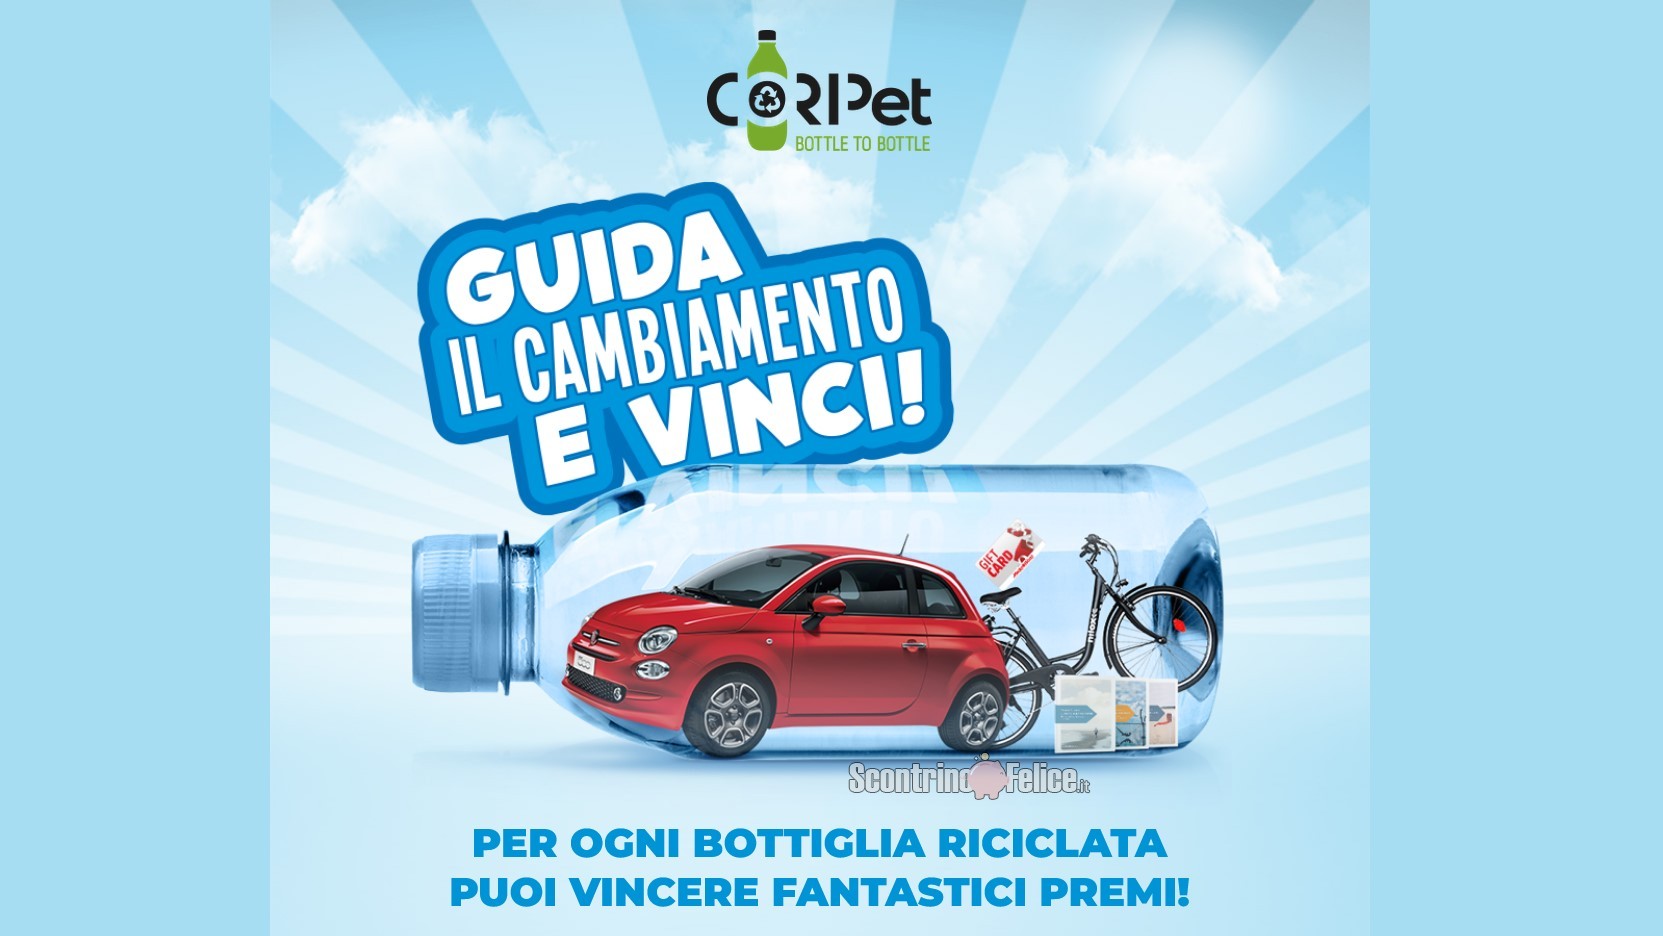 Concorso gratuito Coripet “Guida il cambiamento e vinci”: in palio bici elettriche Nilox, gift card Mediaworld, libri e una Fiat 500!